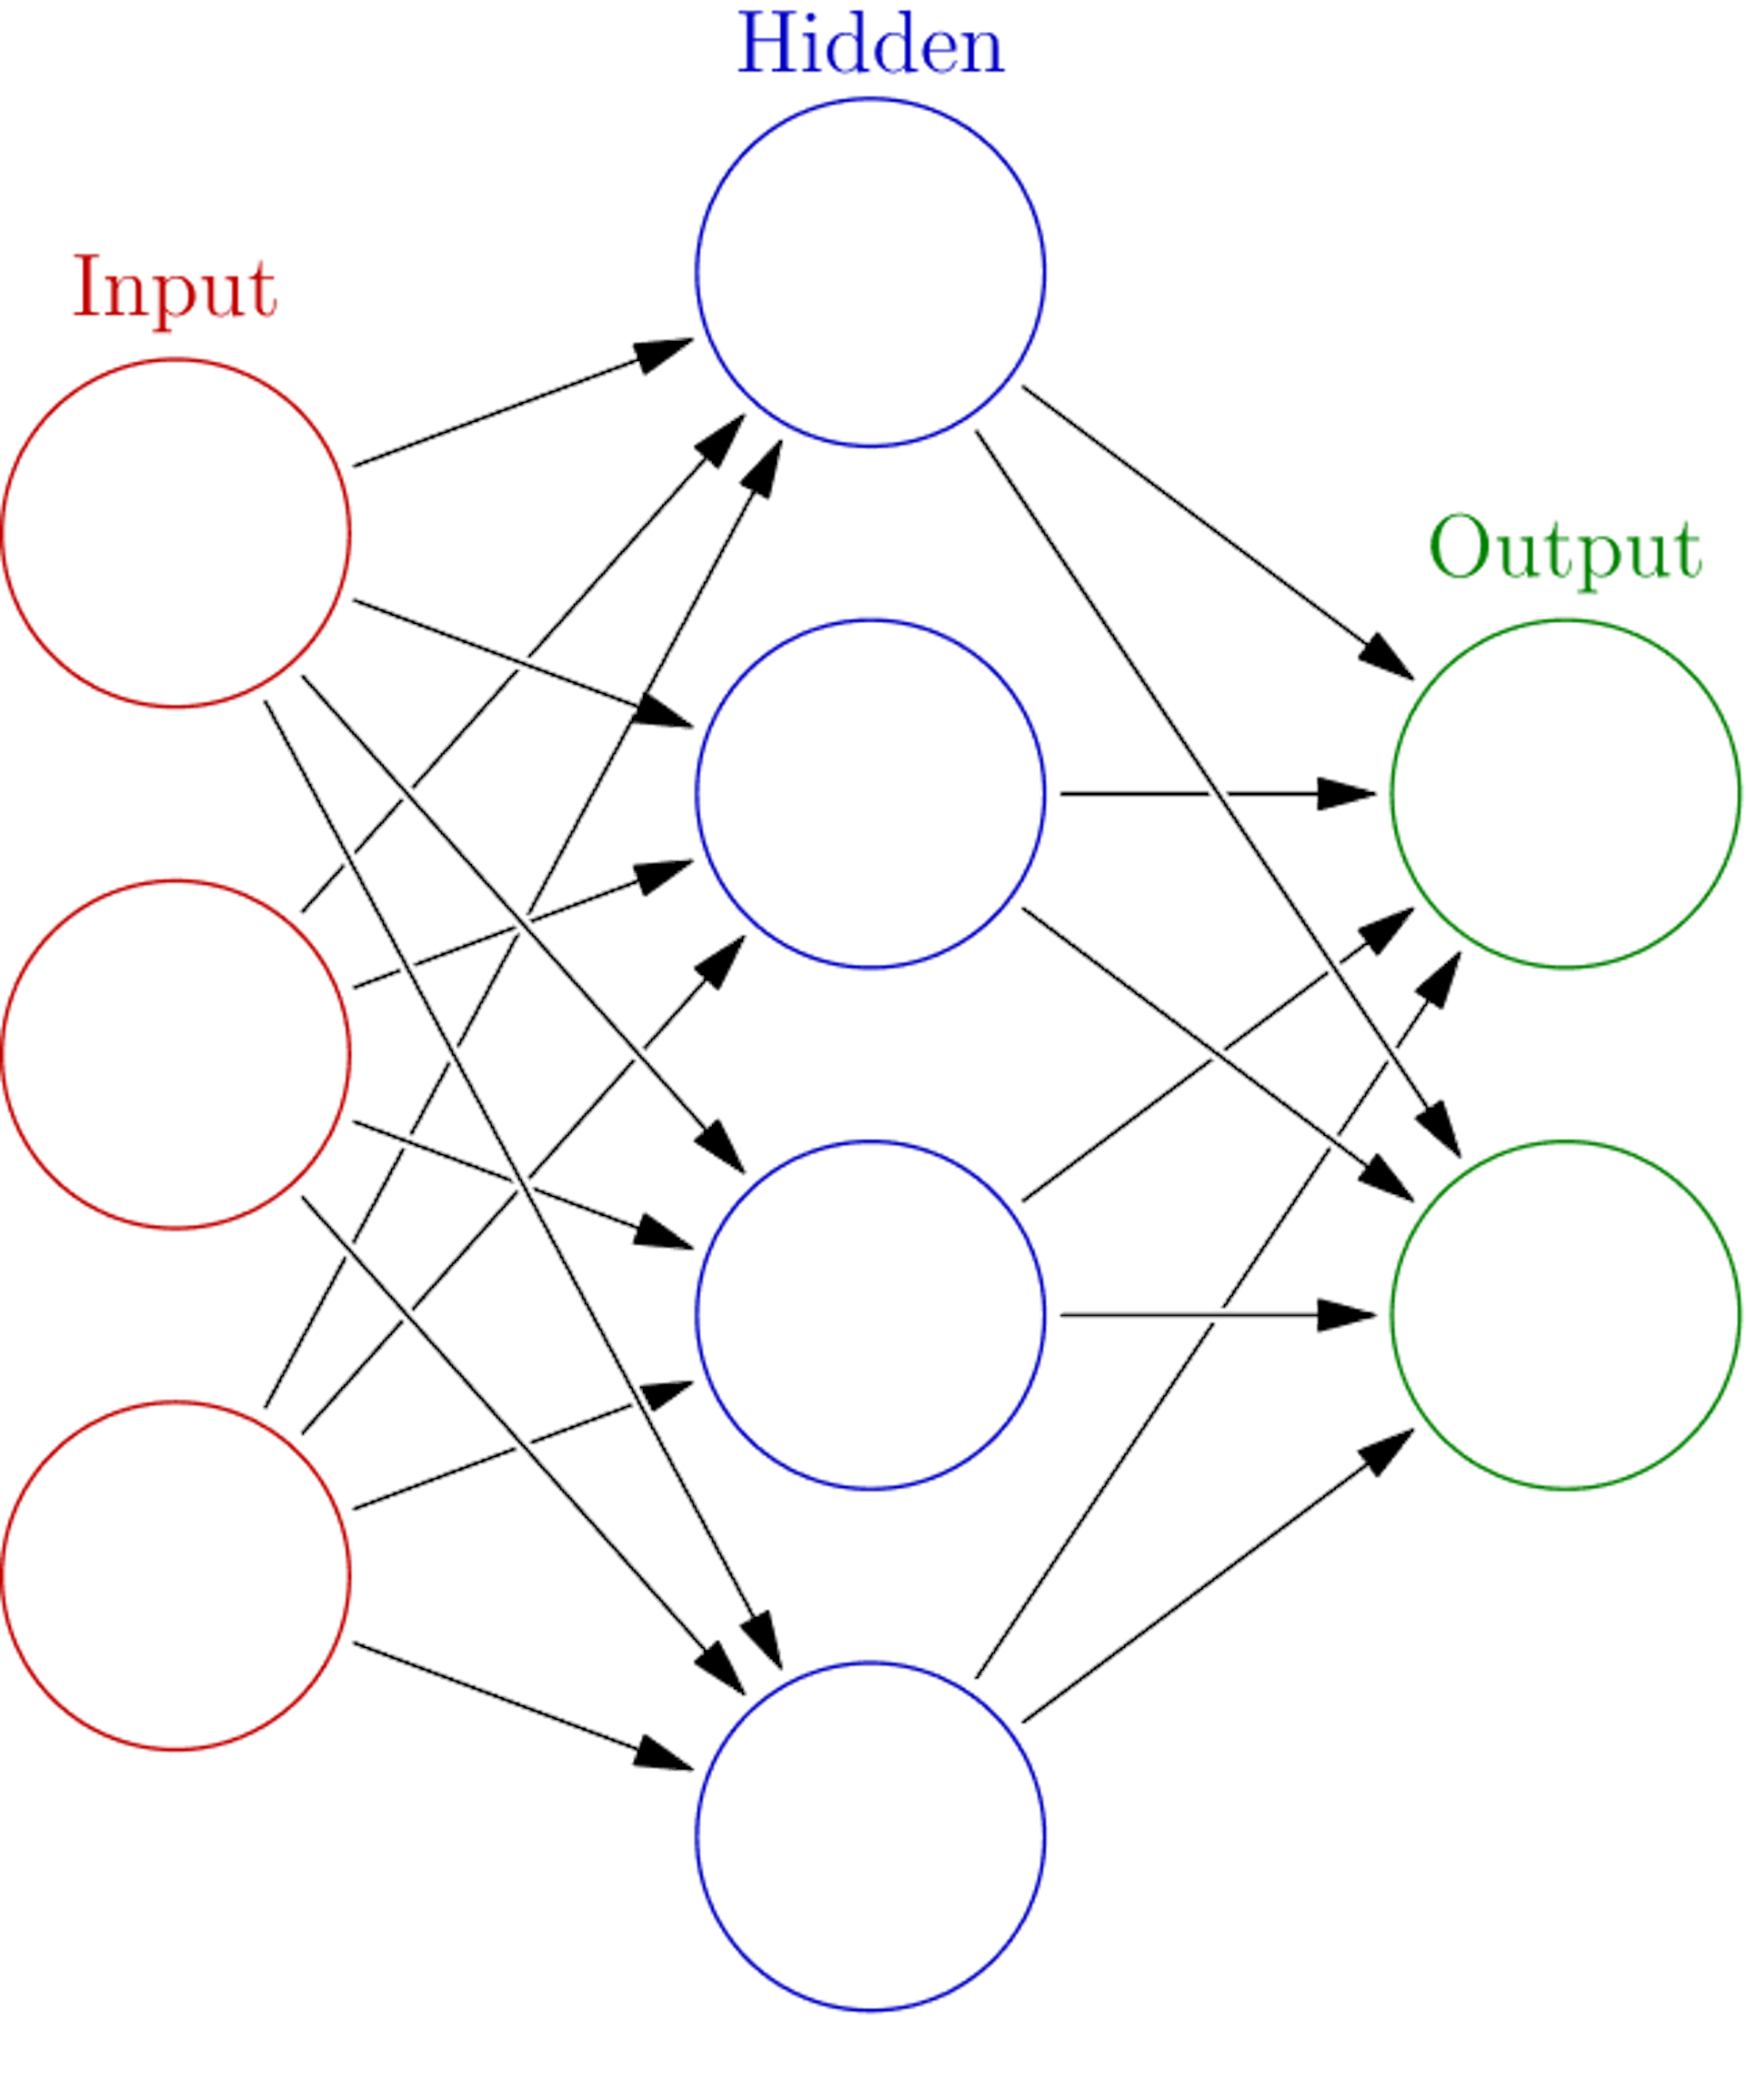 신경망 작동 방식에 대한 기본 프레젠테이션(원본: https://en.wikipedia.org/wiki/Neural_network_(machine_learning)#/media/File:Colored_neural_network.svg)